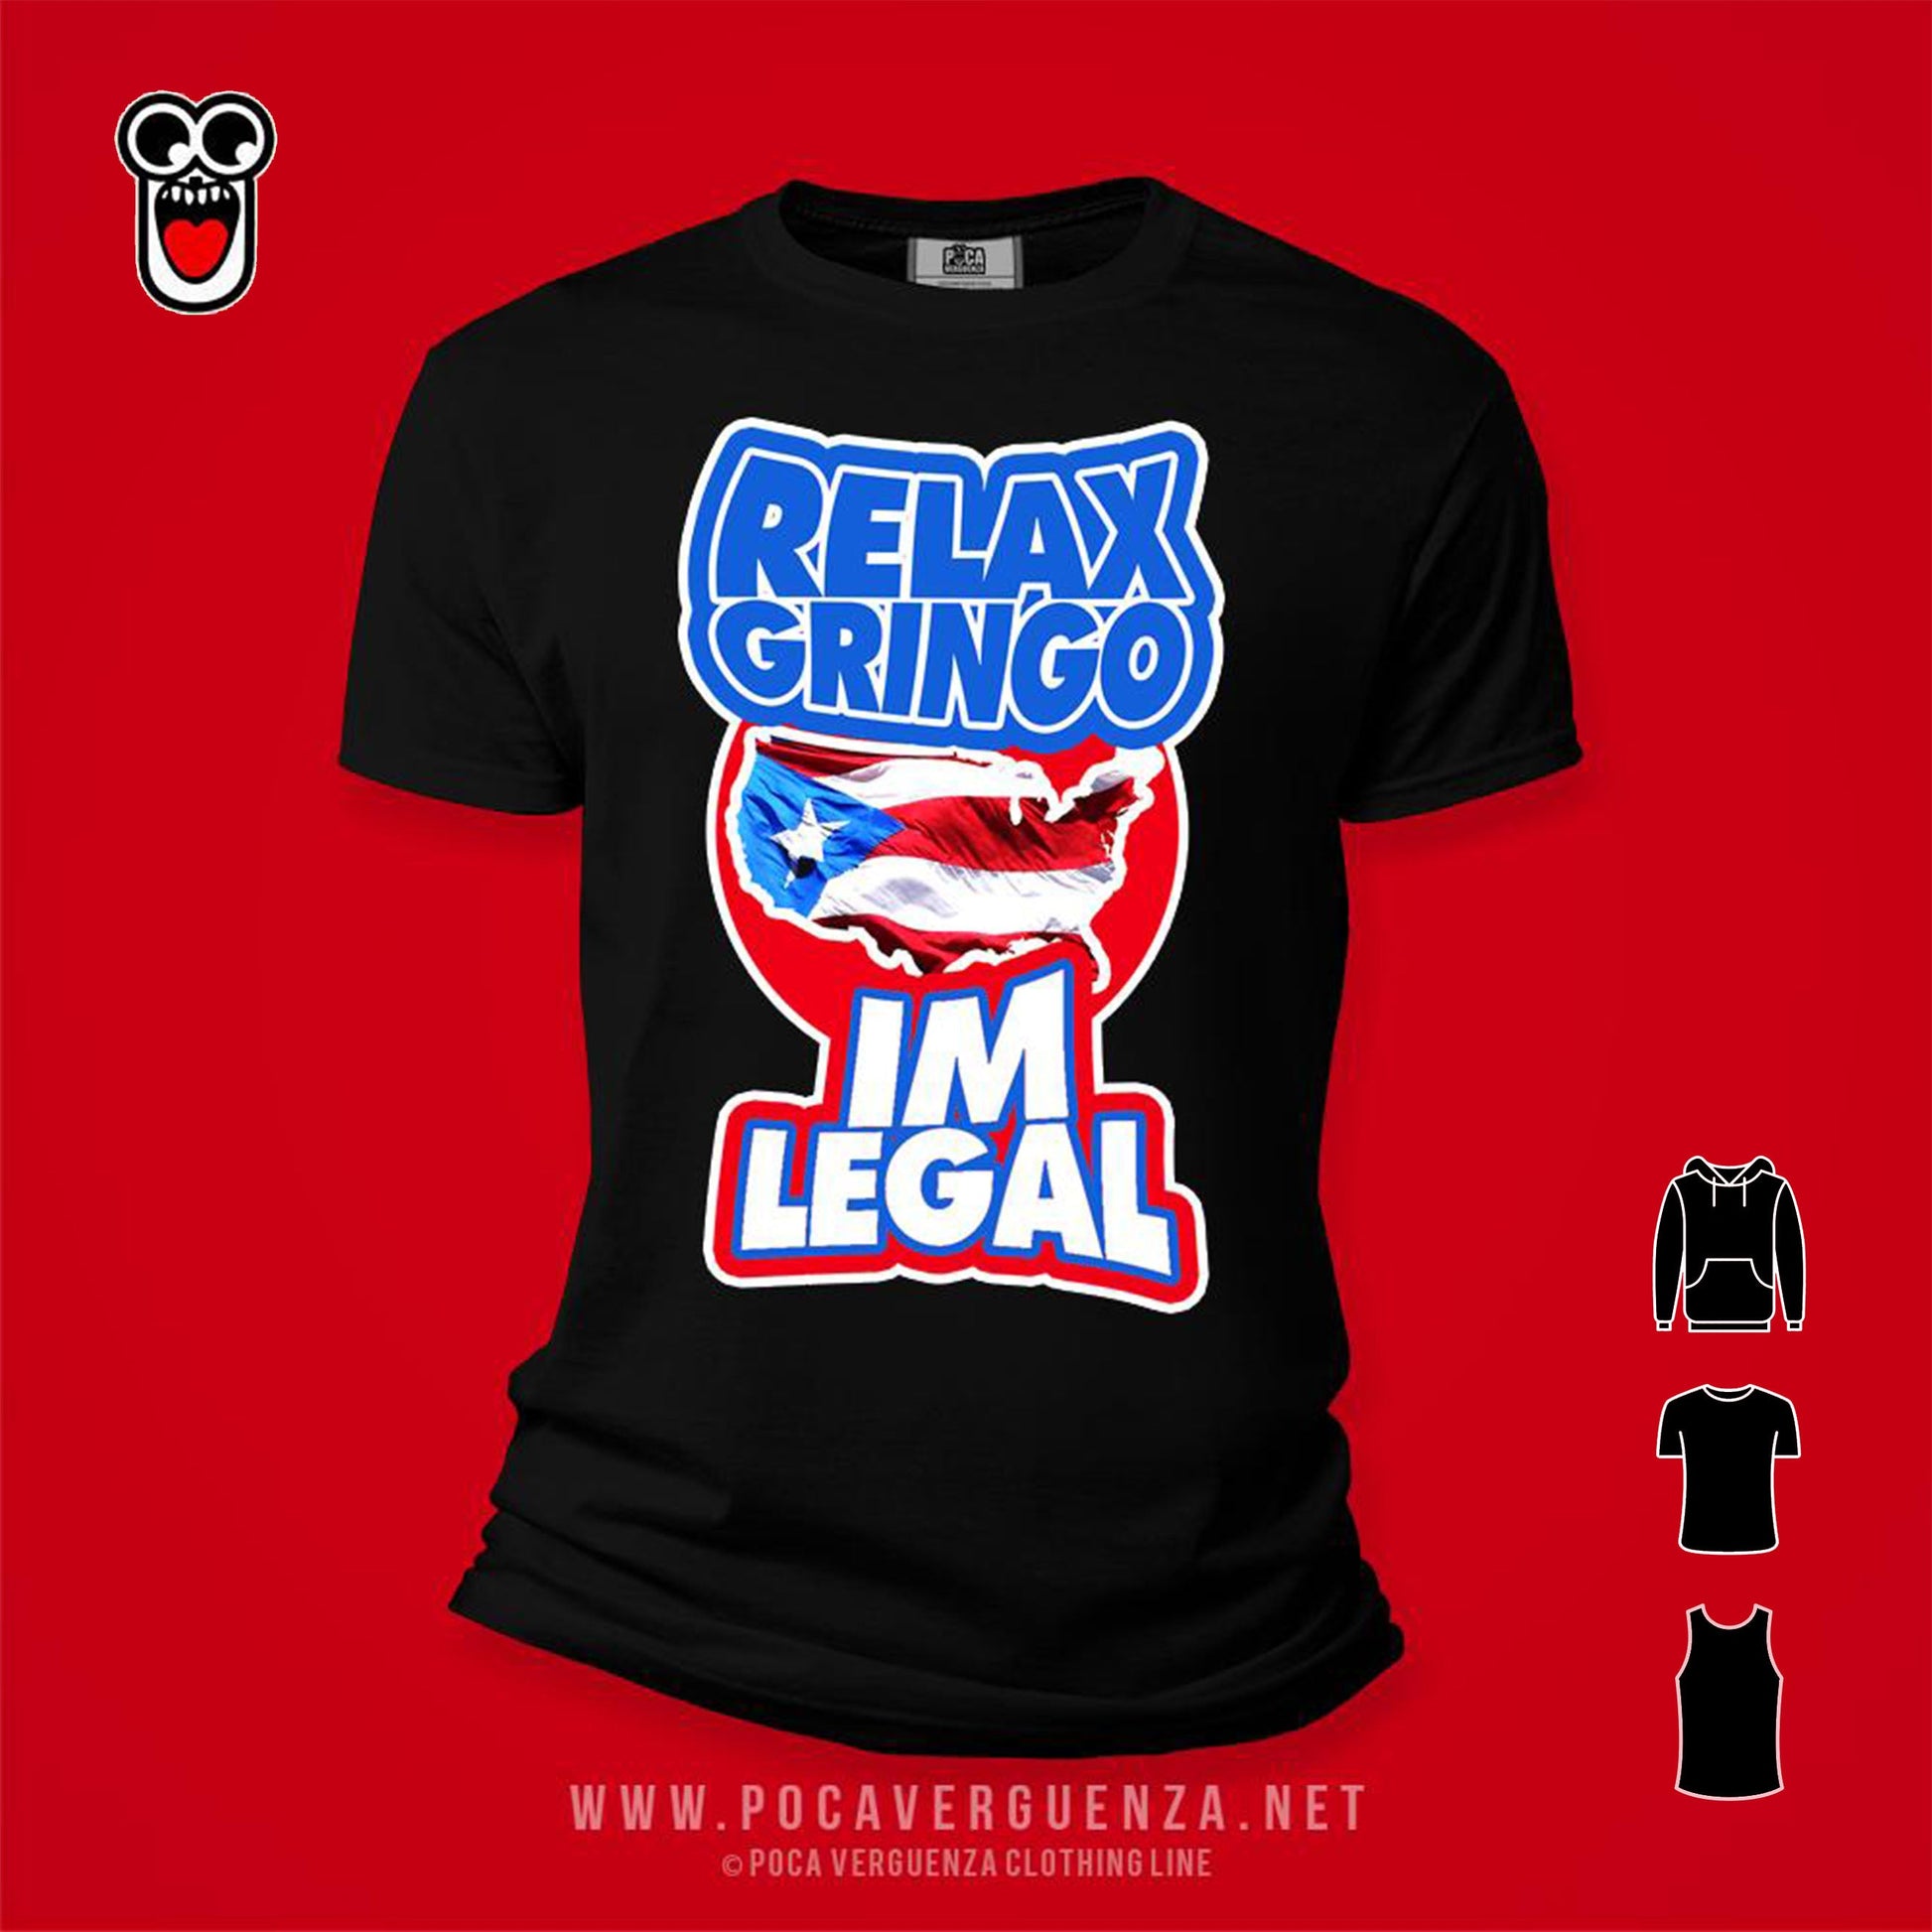 Relax Gringo Legal pocaverguenzapr Camisetas (4411320827994)